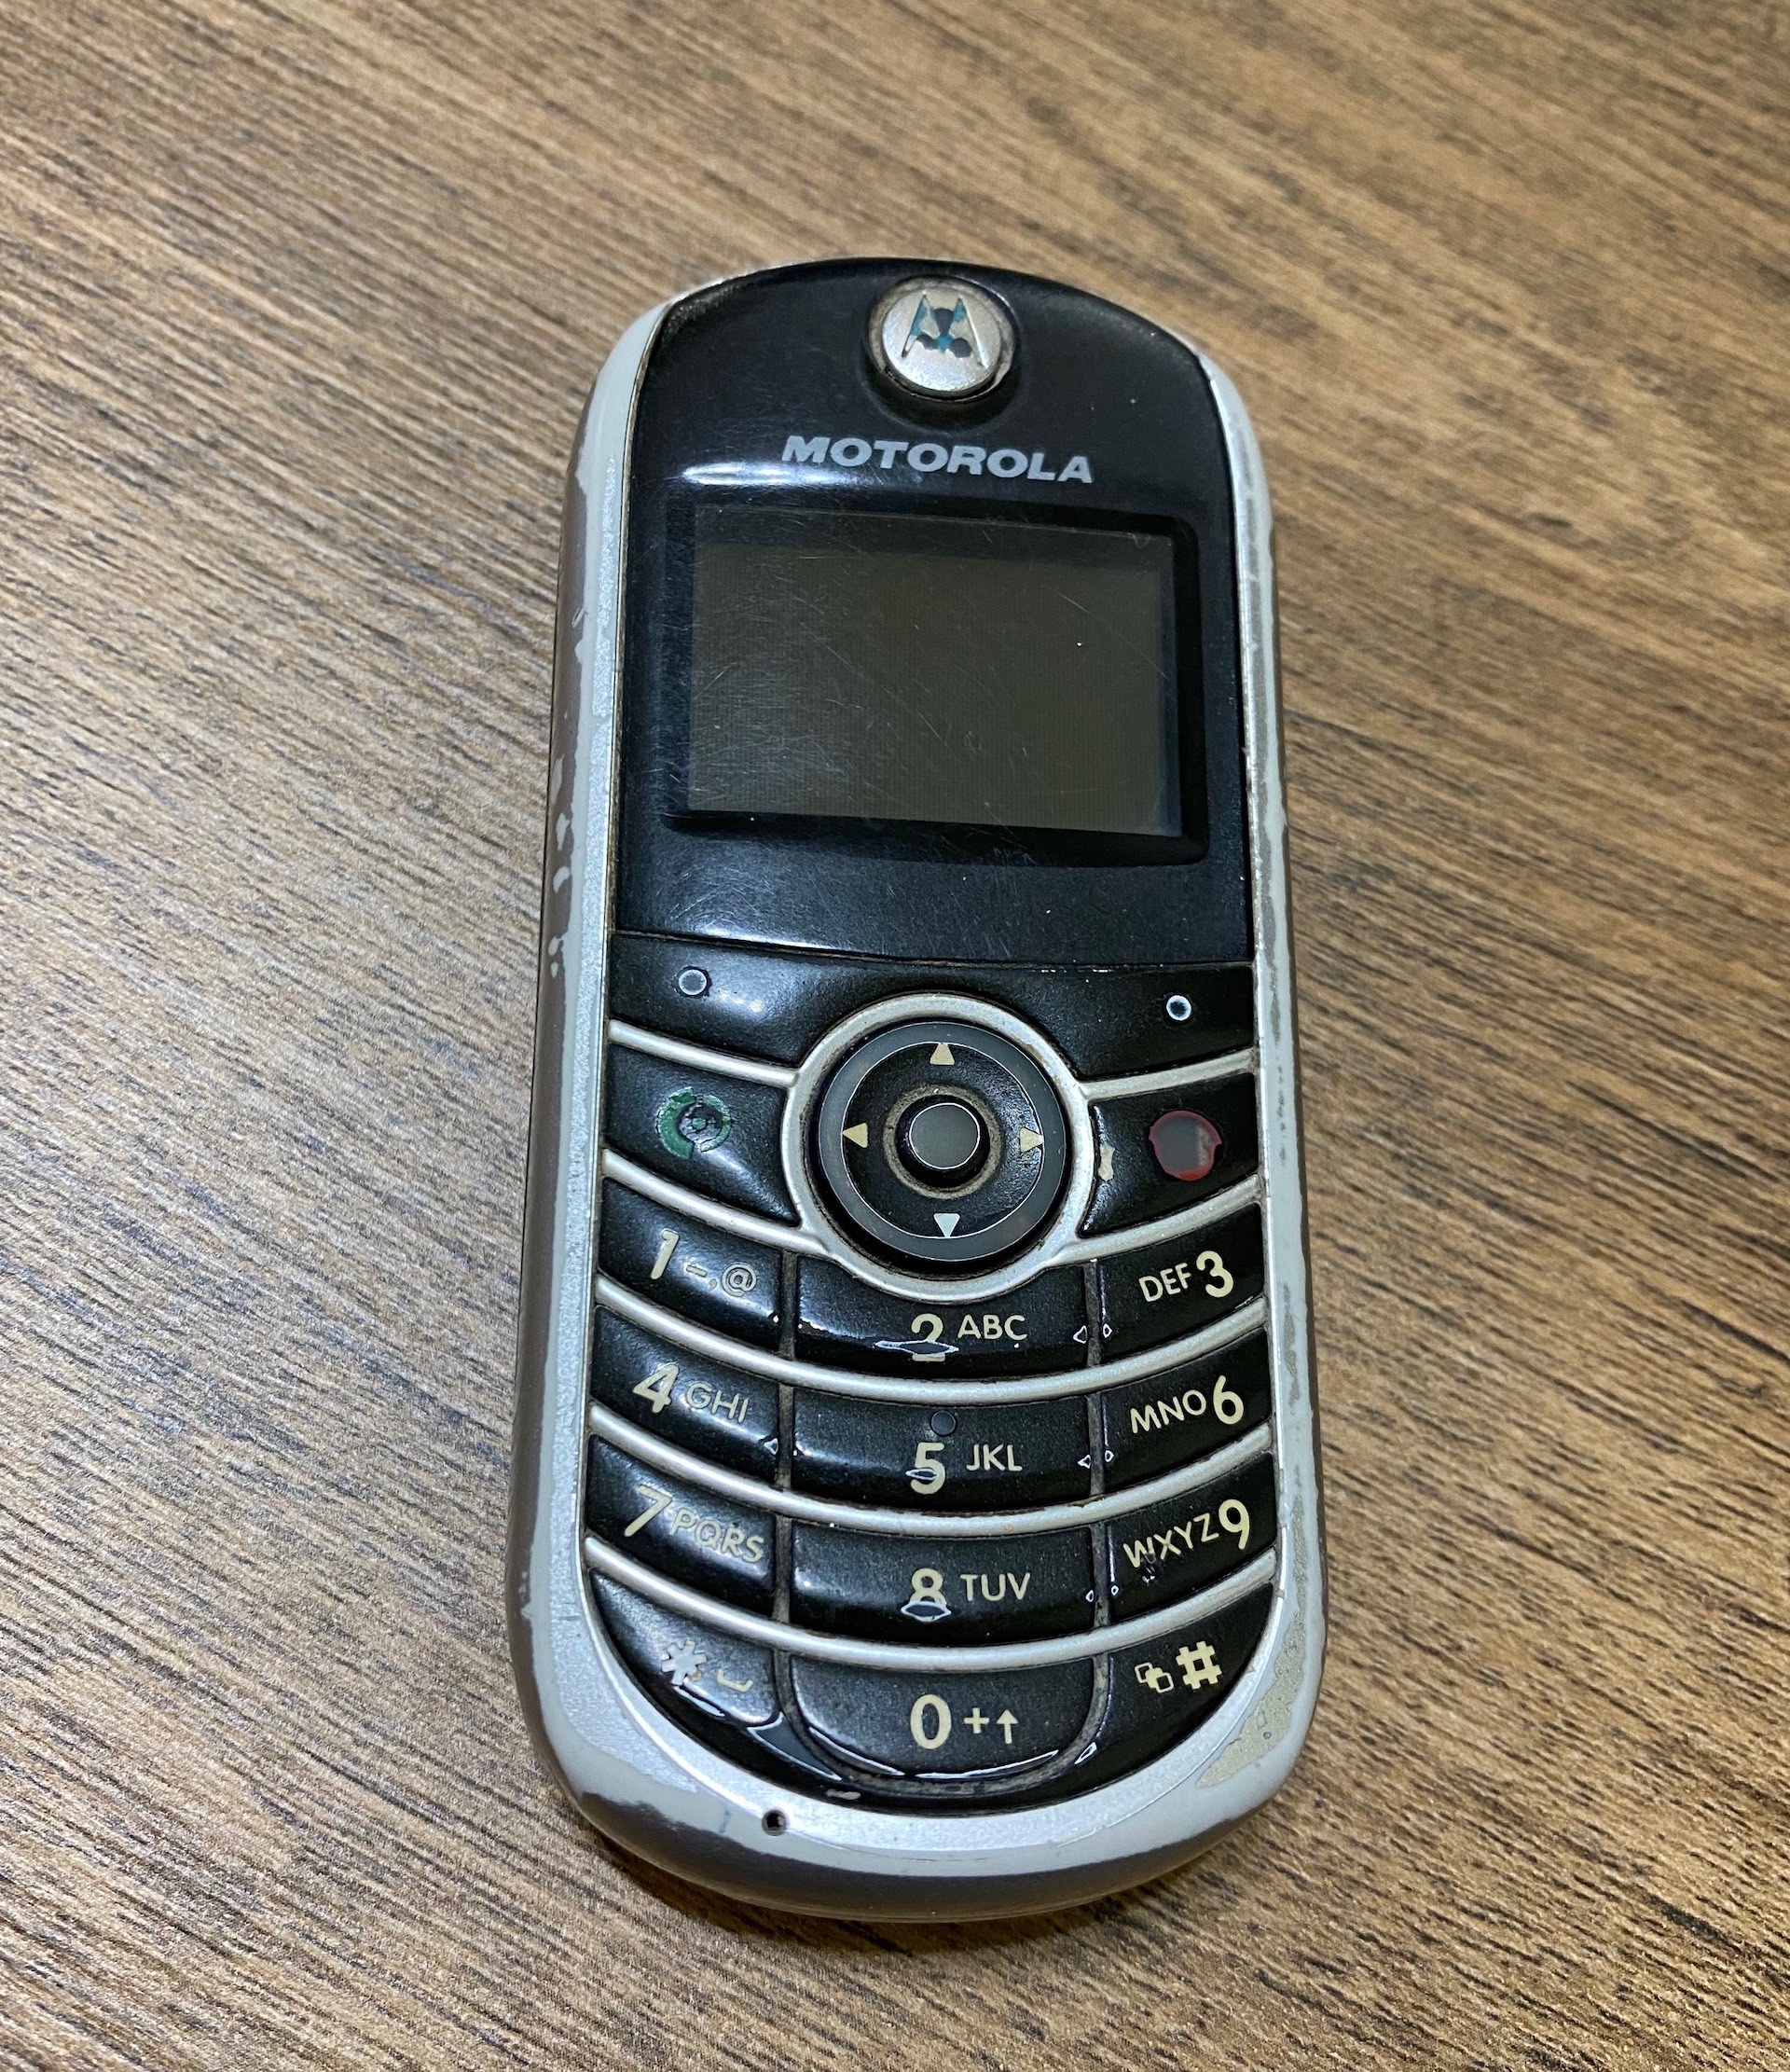 Motorola mobile phone